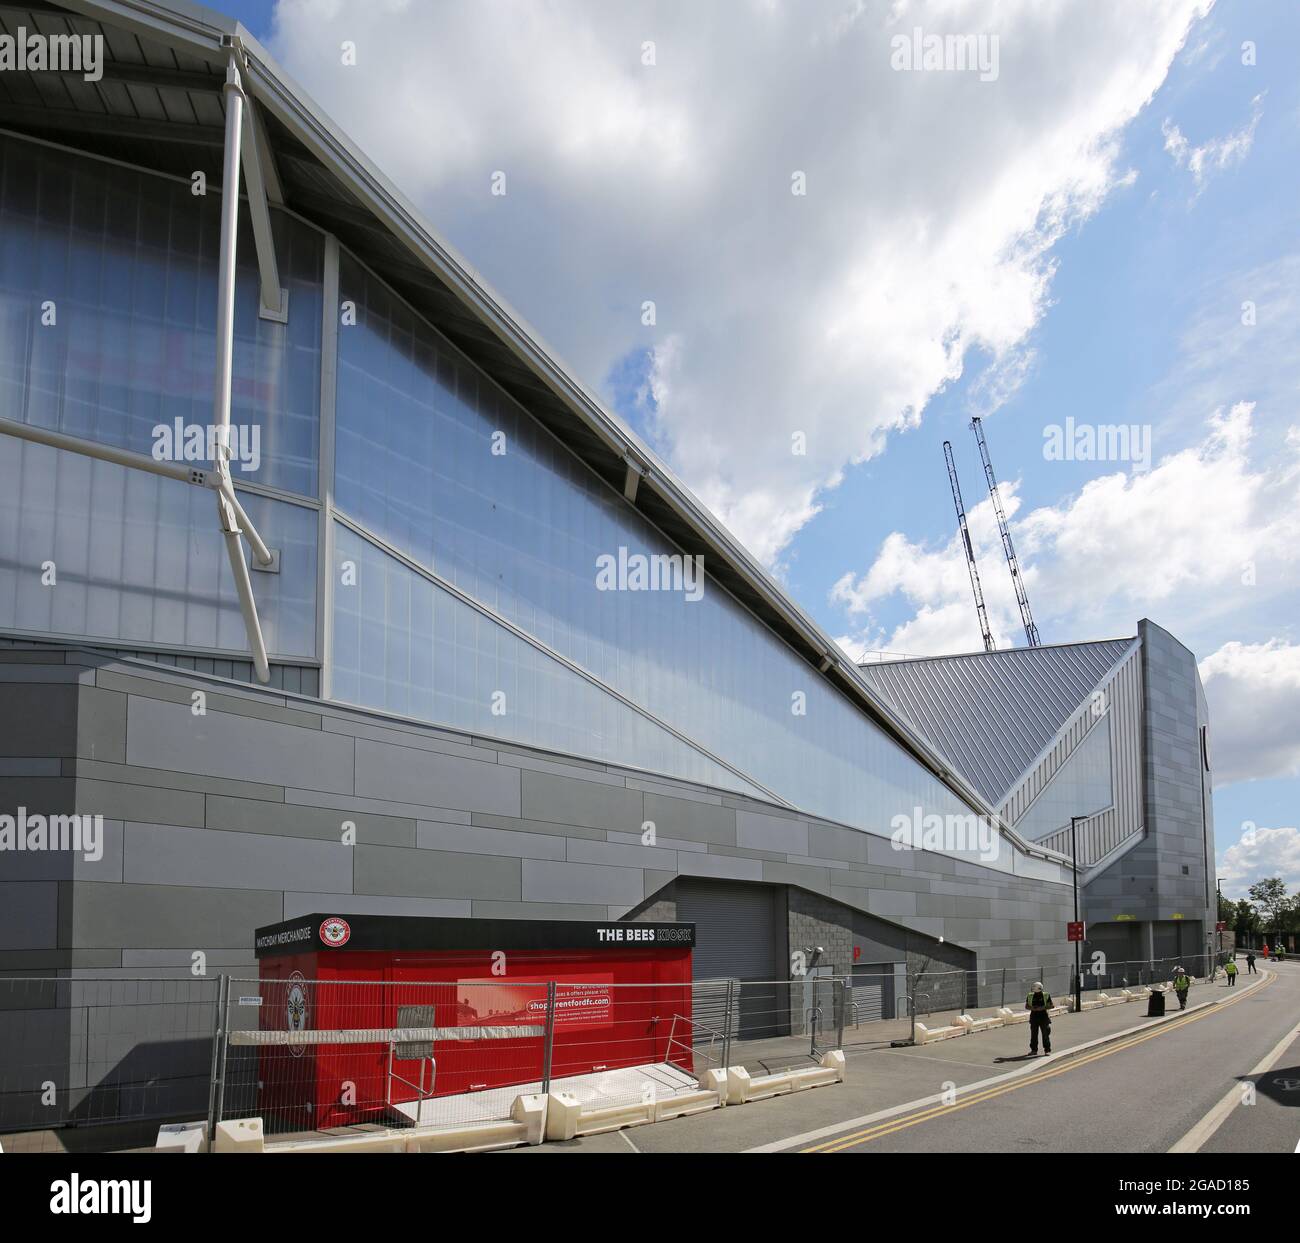 Le nouveau stade du Brentford football Club près du pont Kew dans l'ouest de Londres. Accueille également le London Irish Rugby Club. Conçu par AFL Architects. Banque D'Images